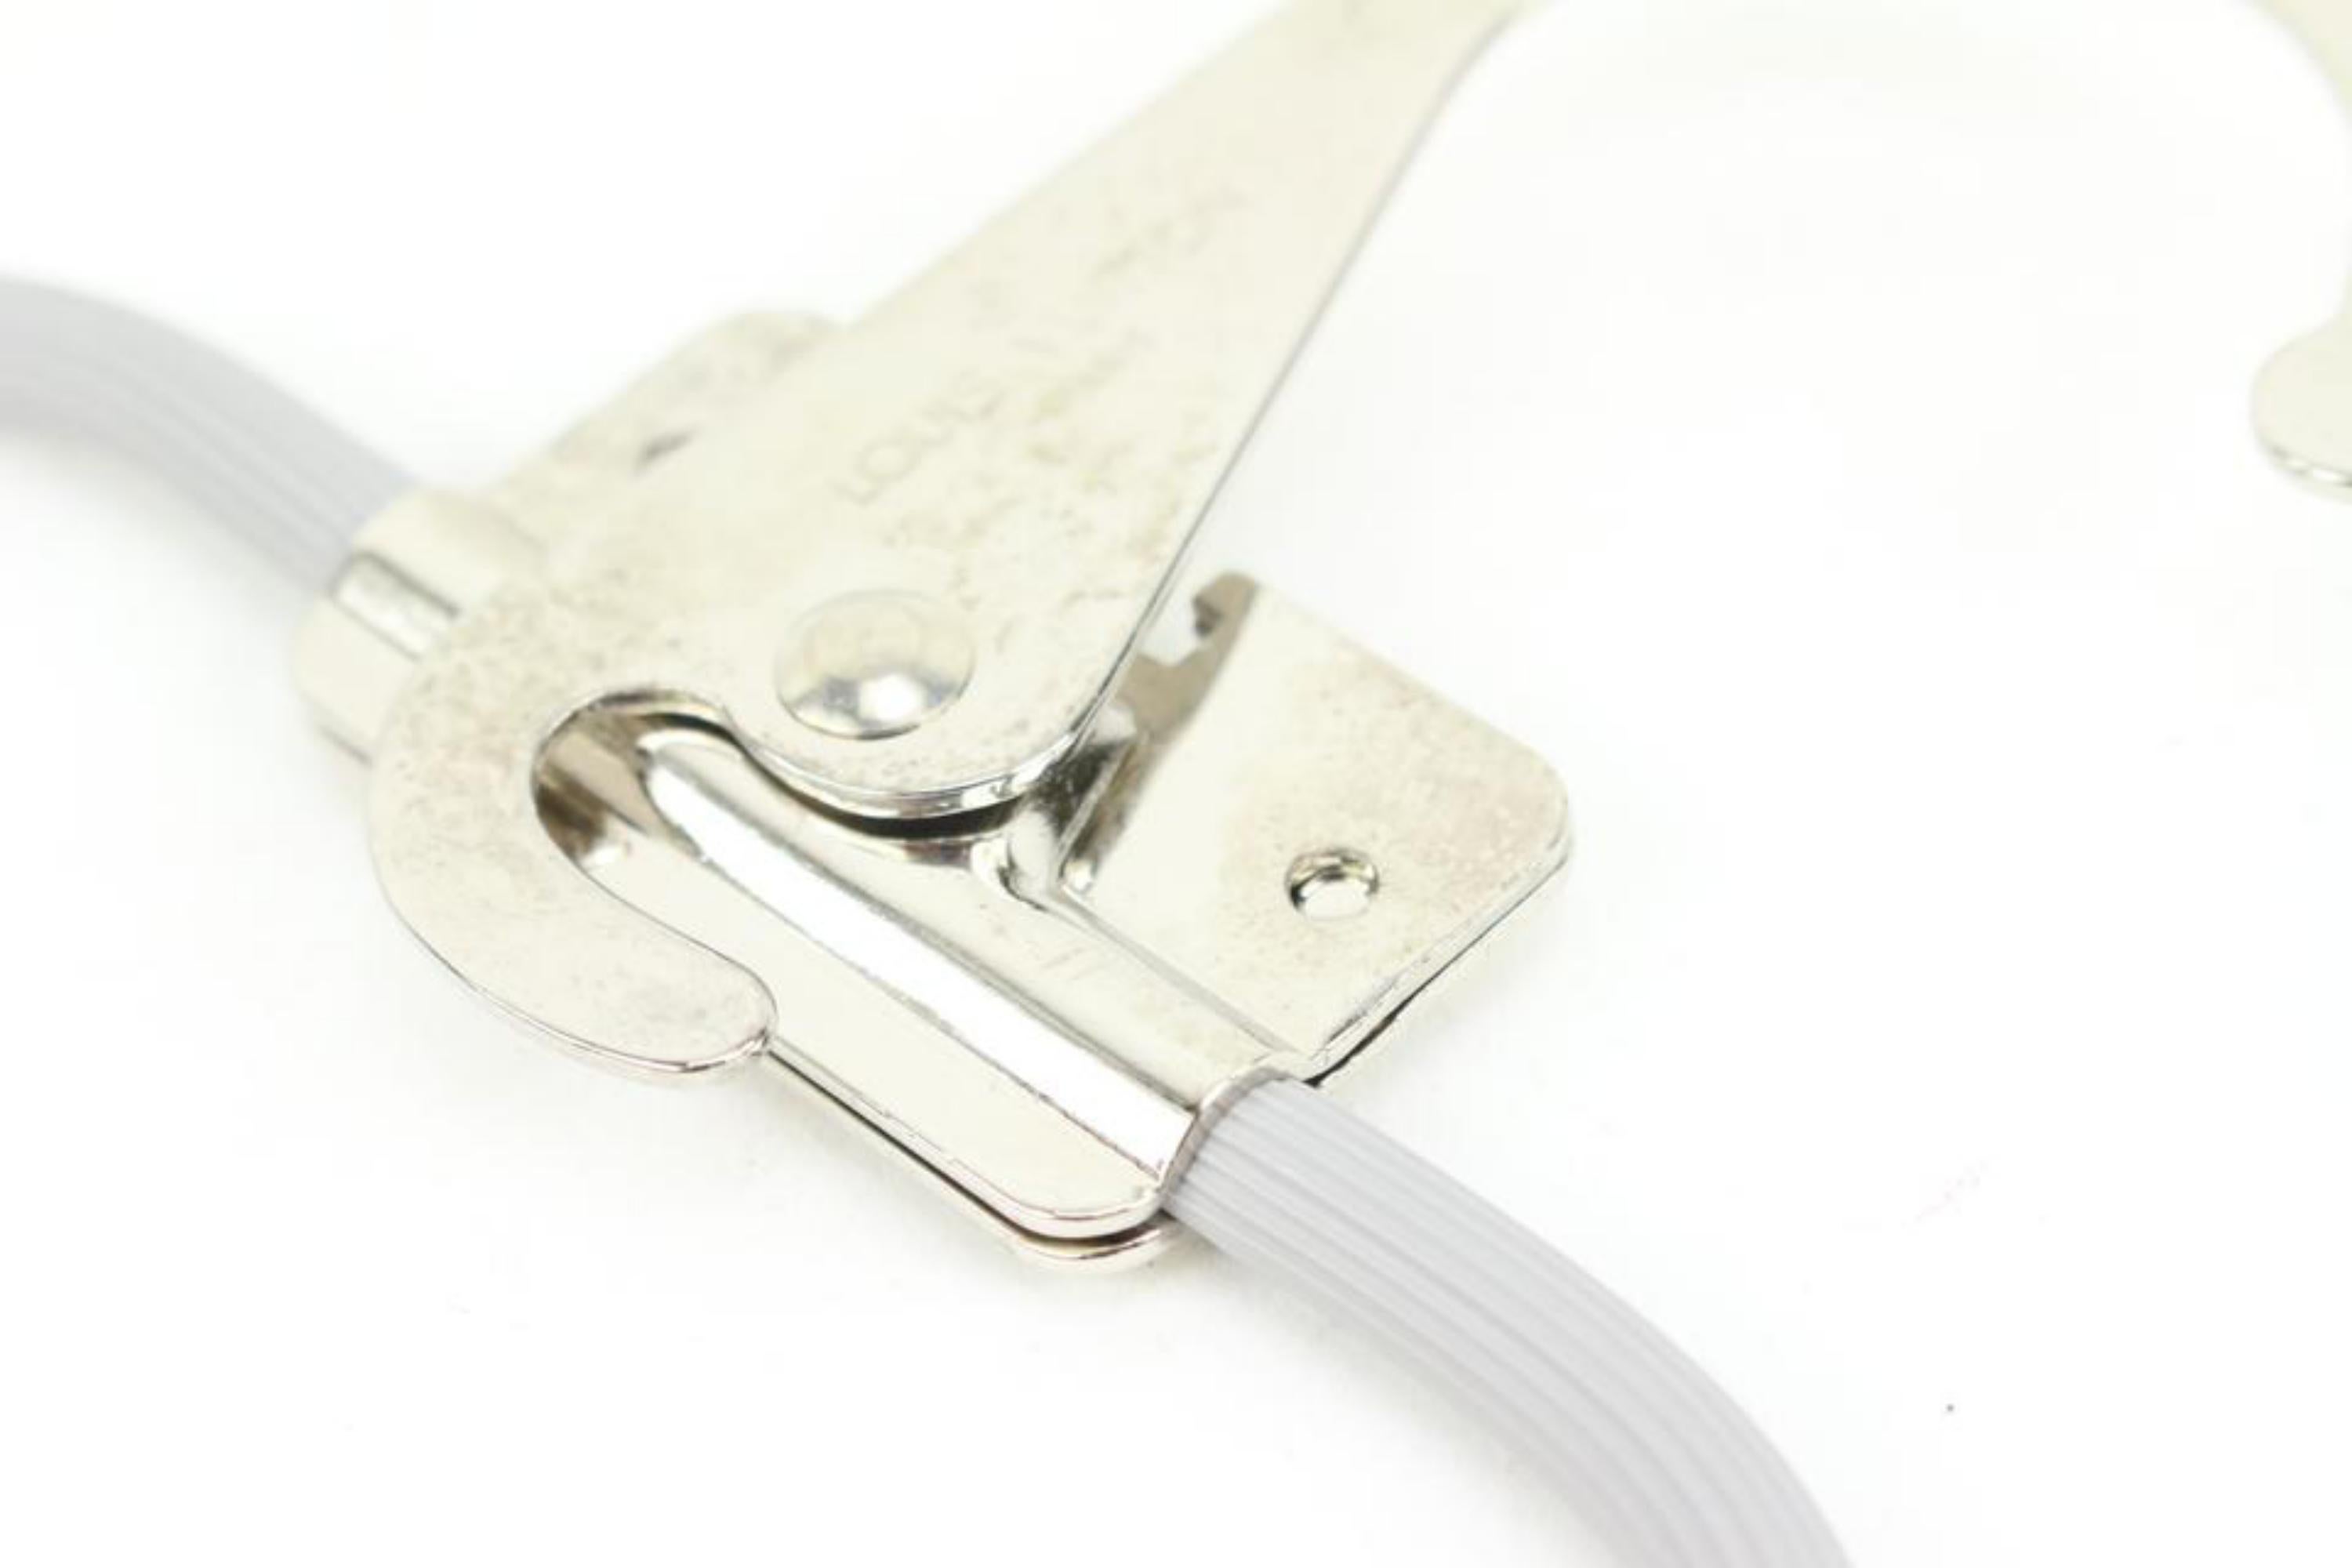 Louis Vuitton Grey x Silver Retractable Hanger 48lv51
Measurements: Length:  16.5